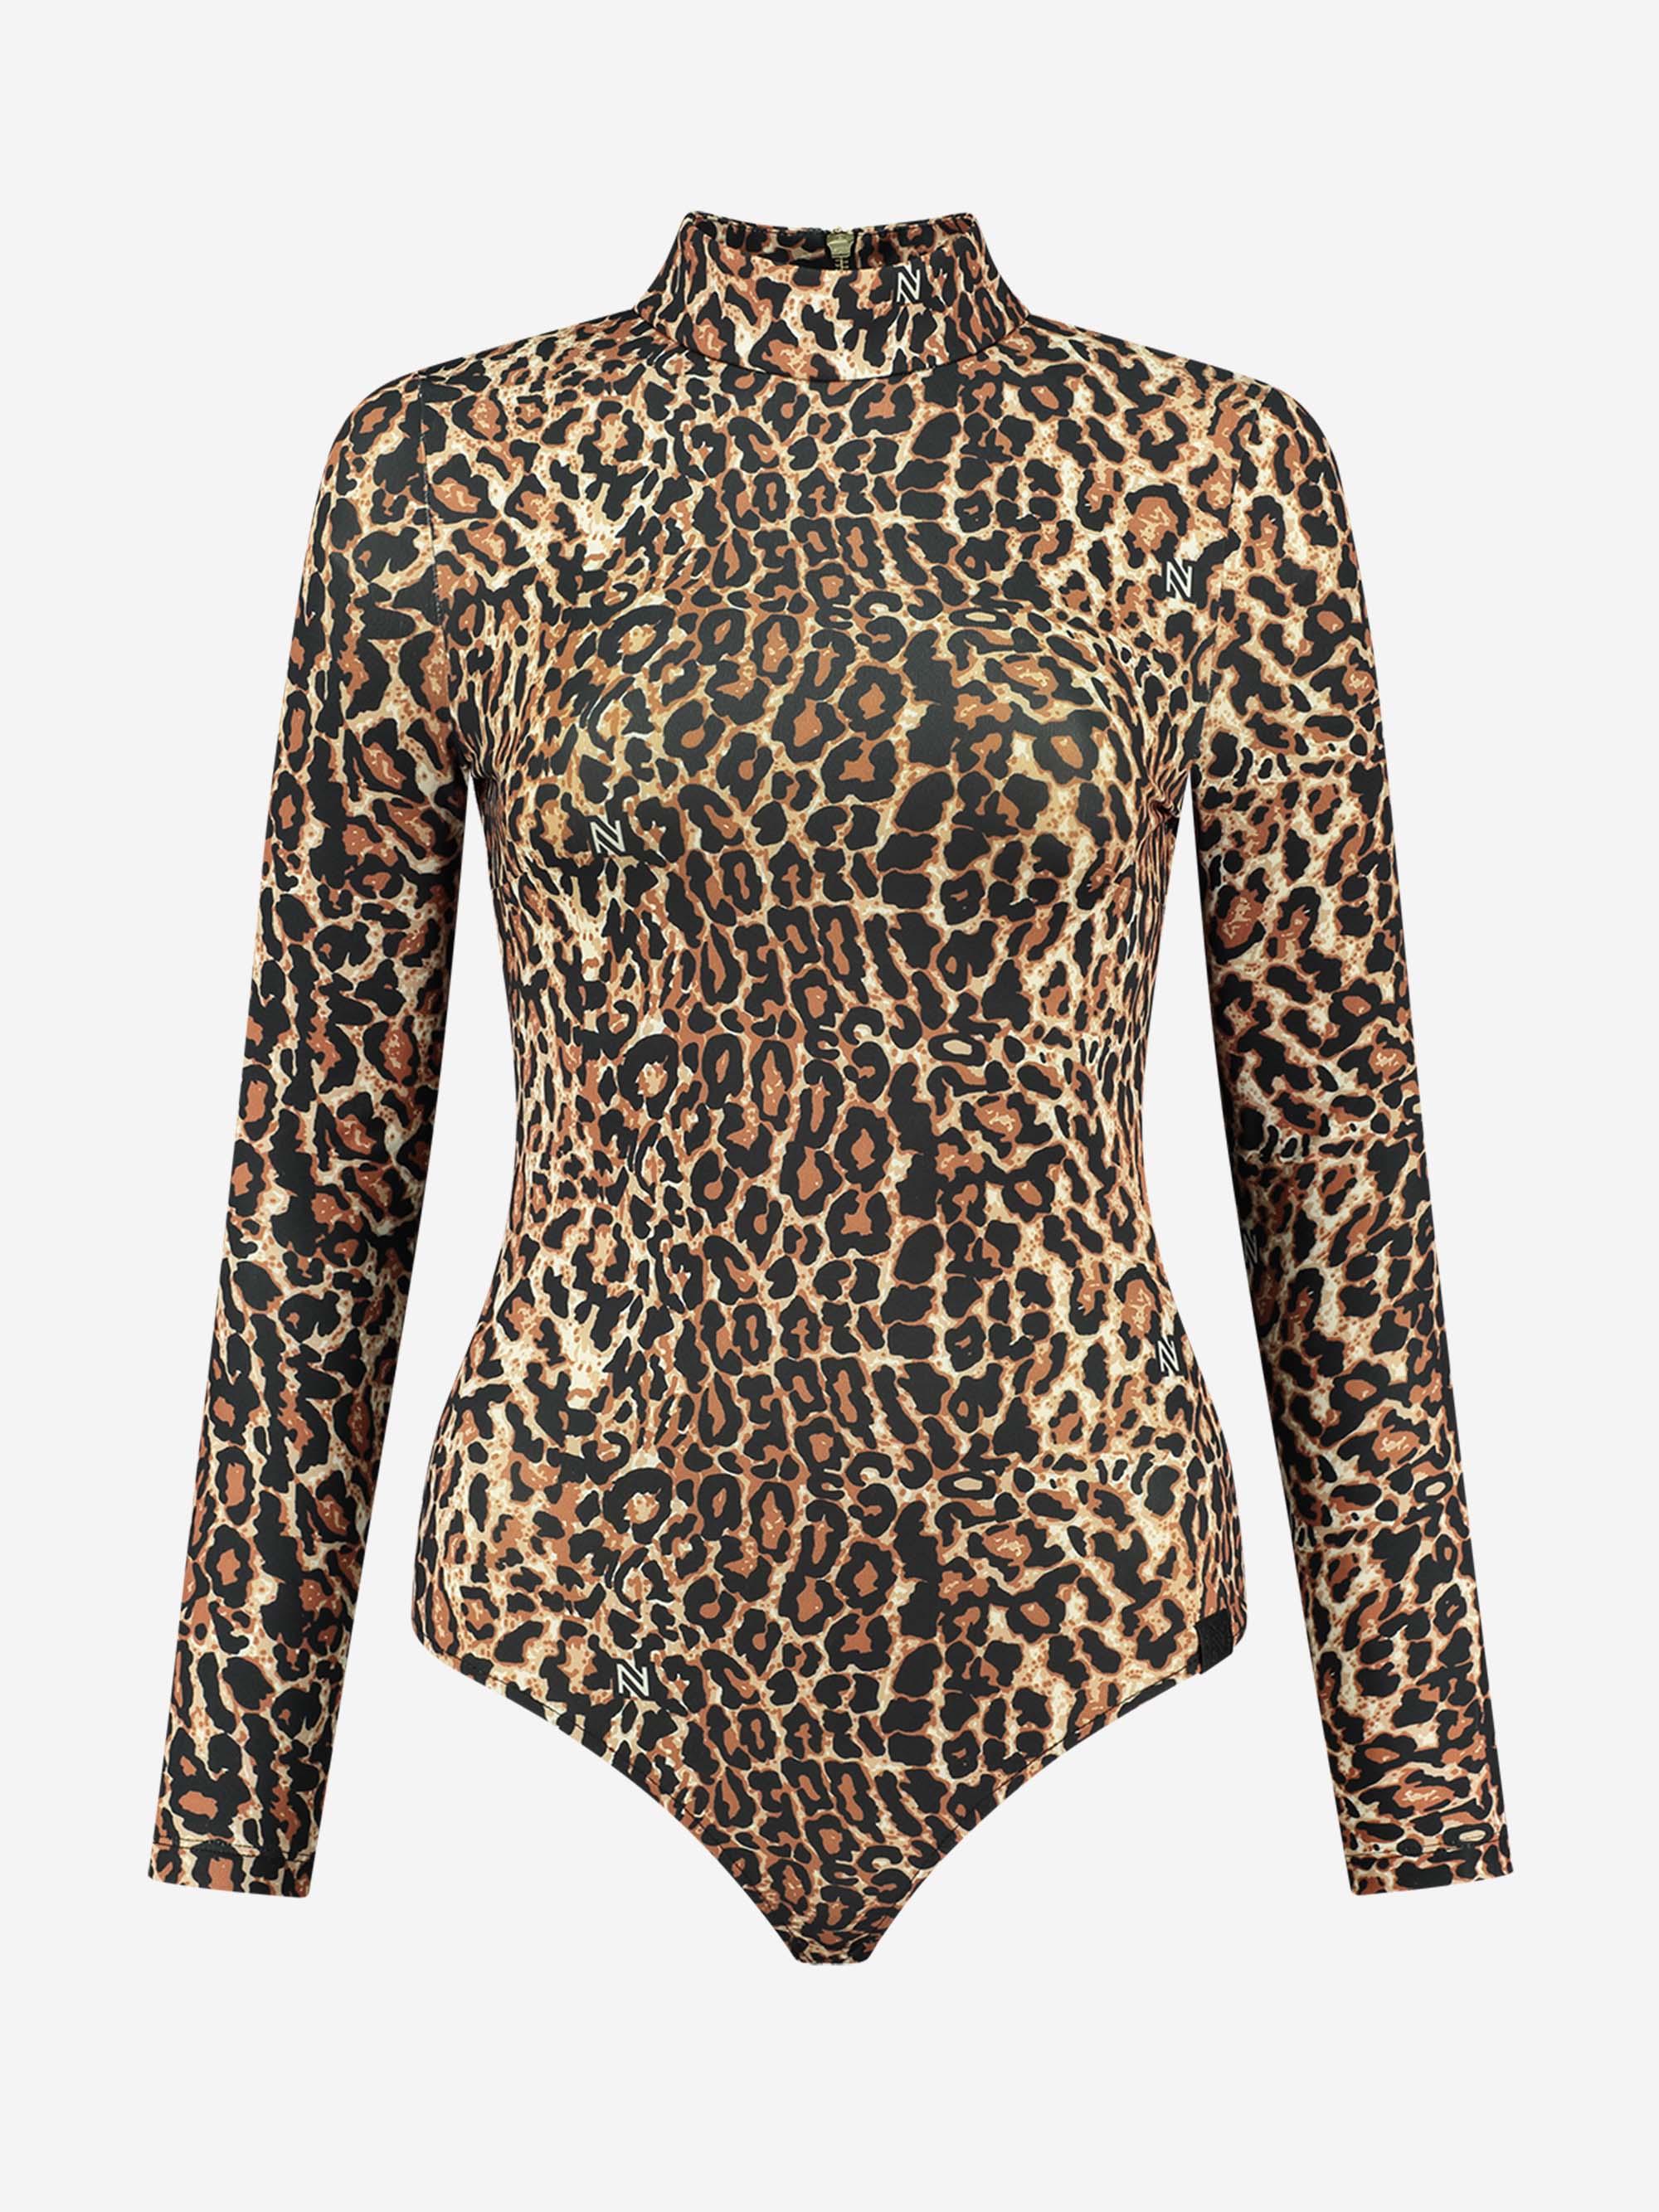 Leopard Body